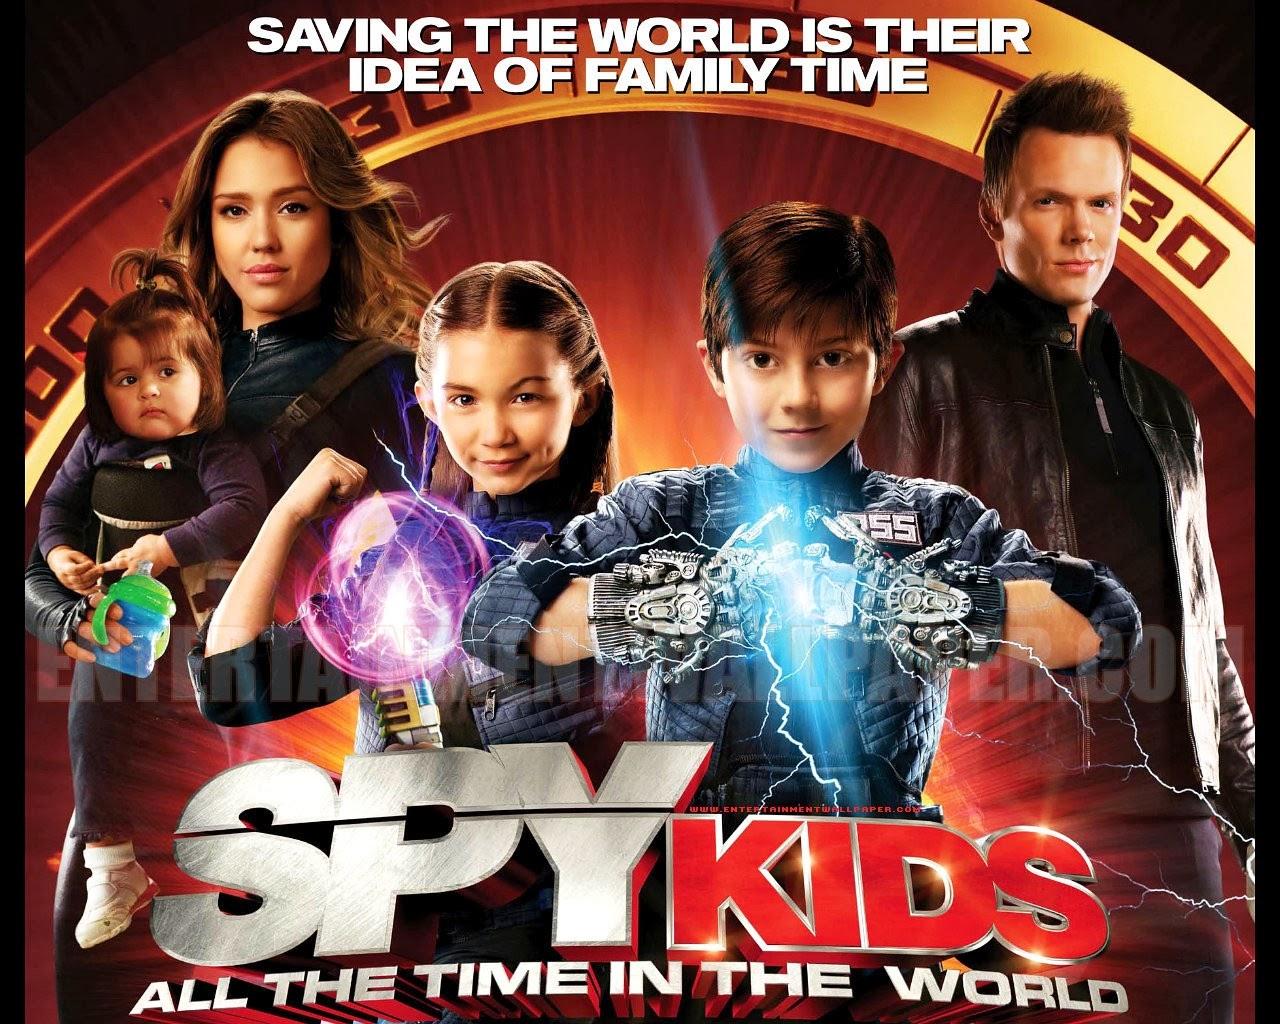 CK2: spy kids